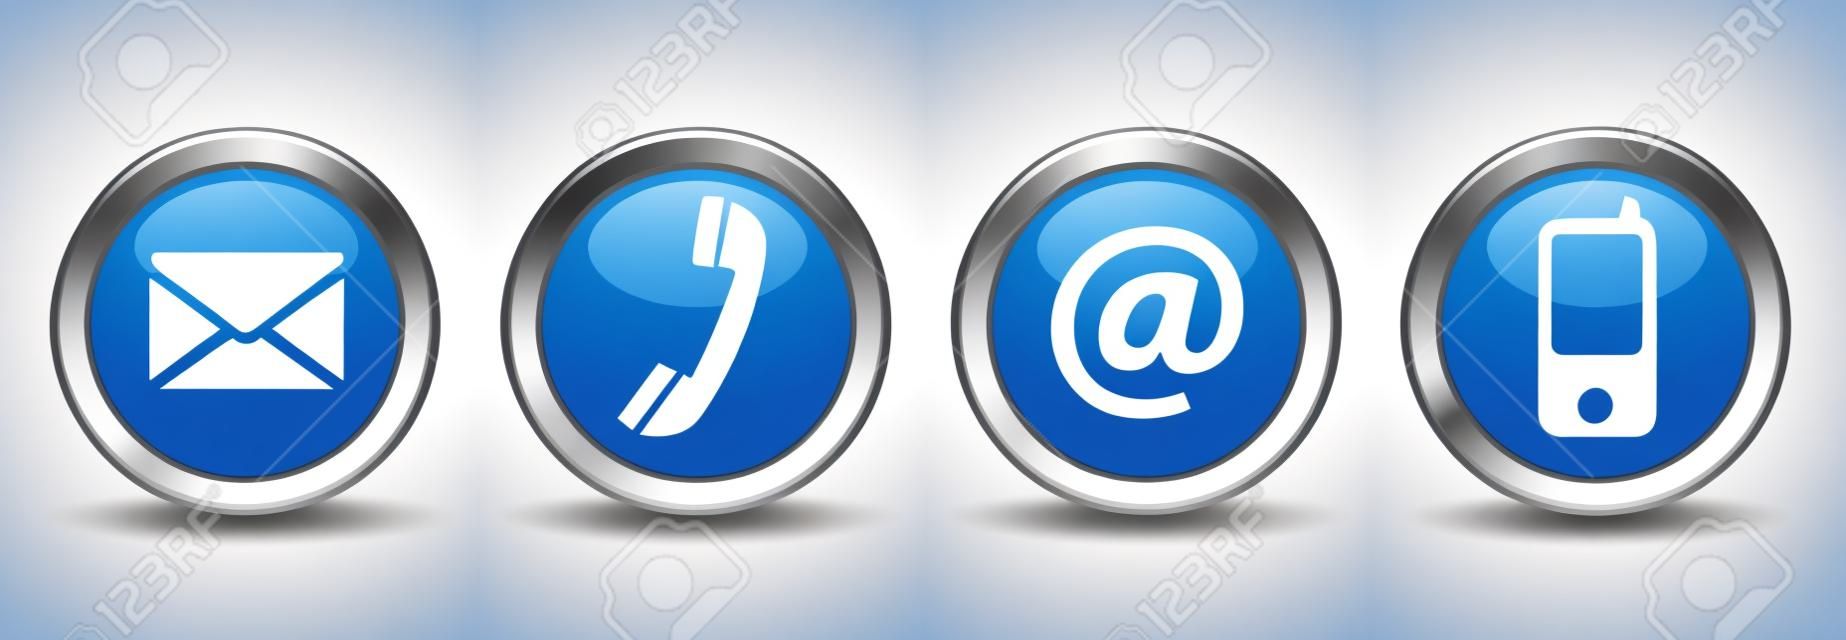 Kontakt Web-Buttons mit E-Mail gesetzt, an, Telefon und Handy-Symbole auf blauem Silberabzeichen EPS 10-Illustration isoliert auf weißem Hintergrund.